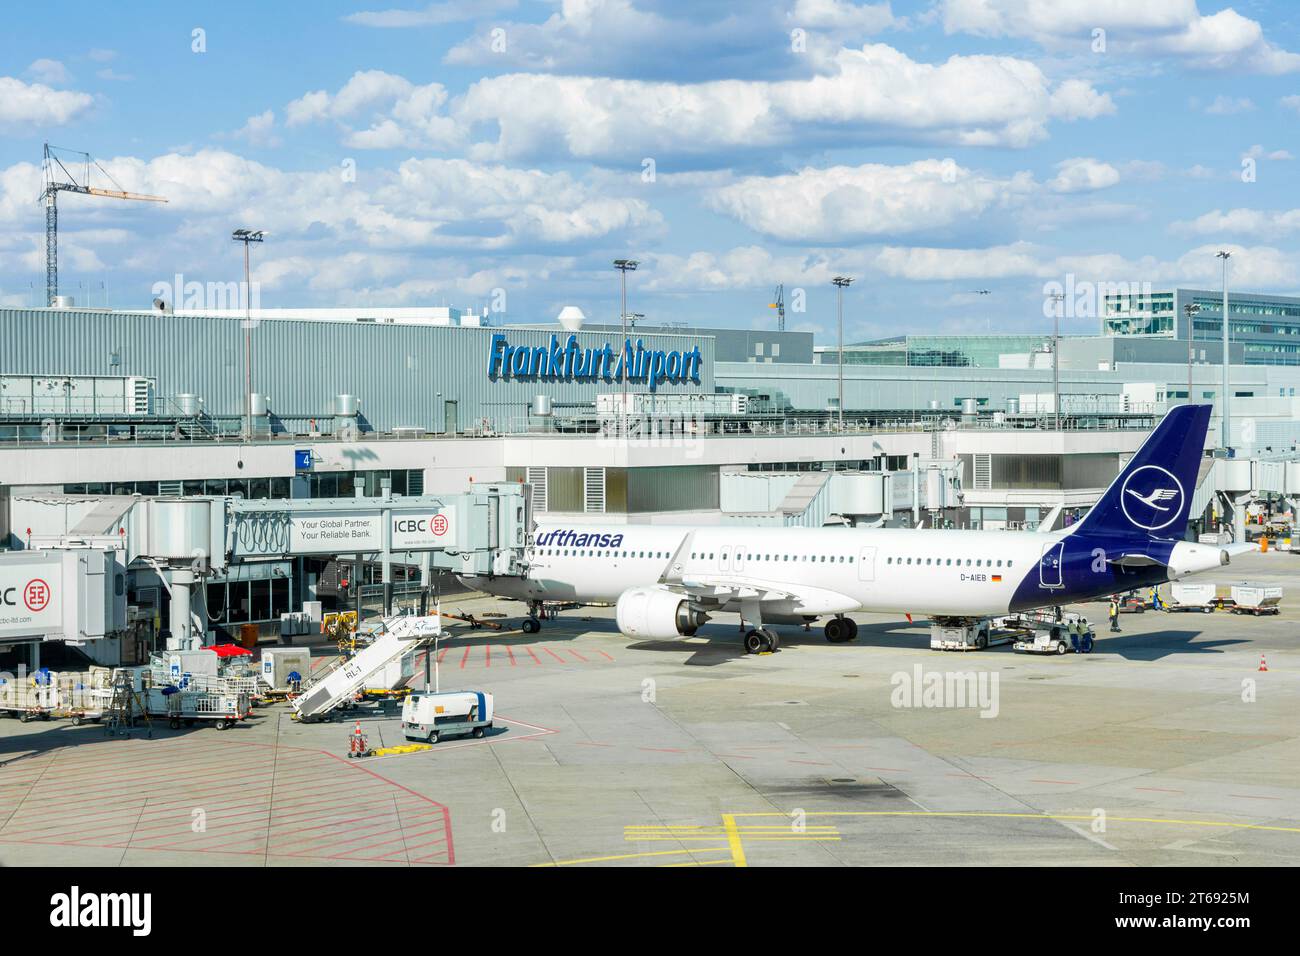 Das Flugzeug der Lufthansa parkt auf dem Vorfeld vor dem Terminal des Frankfurter Flughafens, Frankfurt, Deutschland Stockfoto